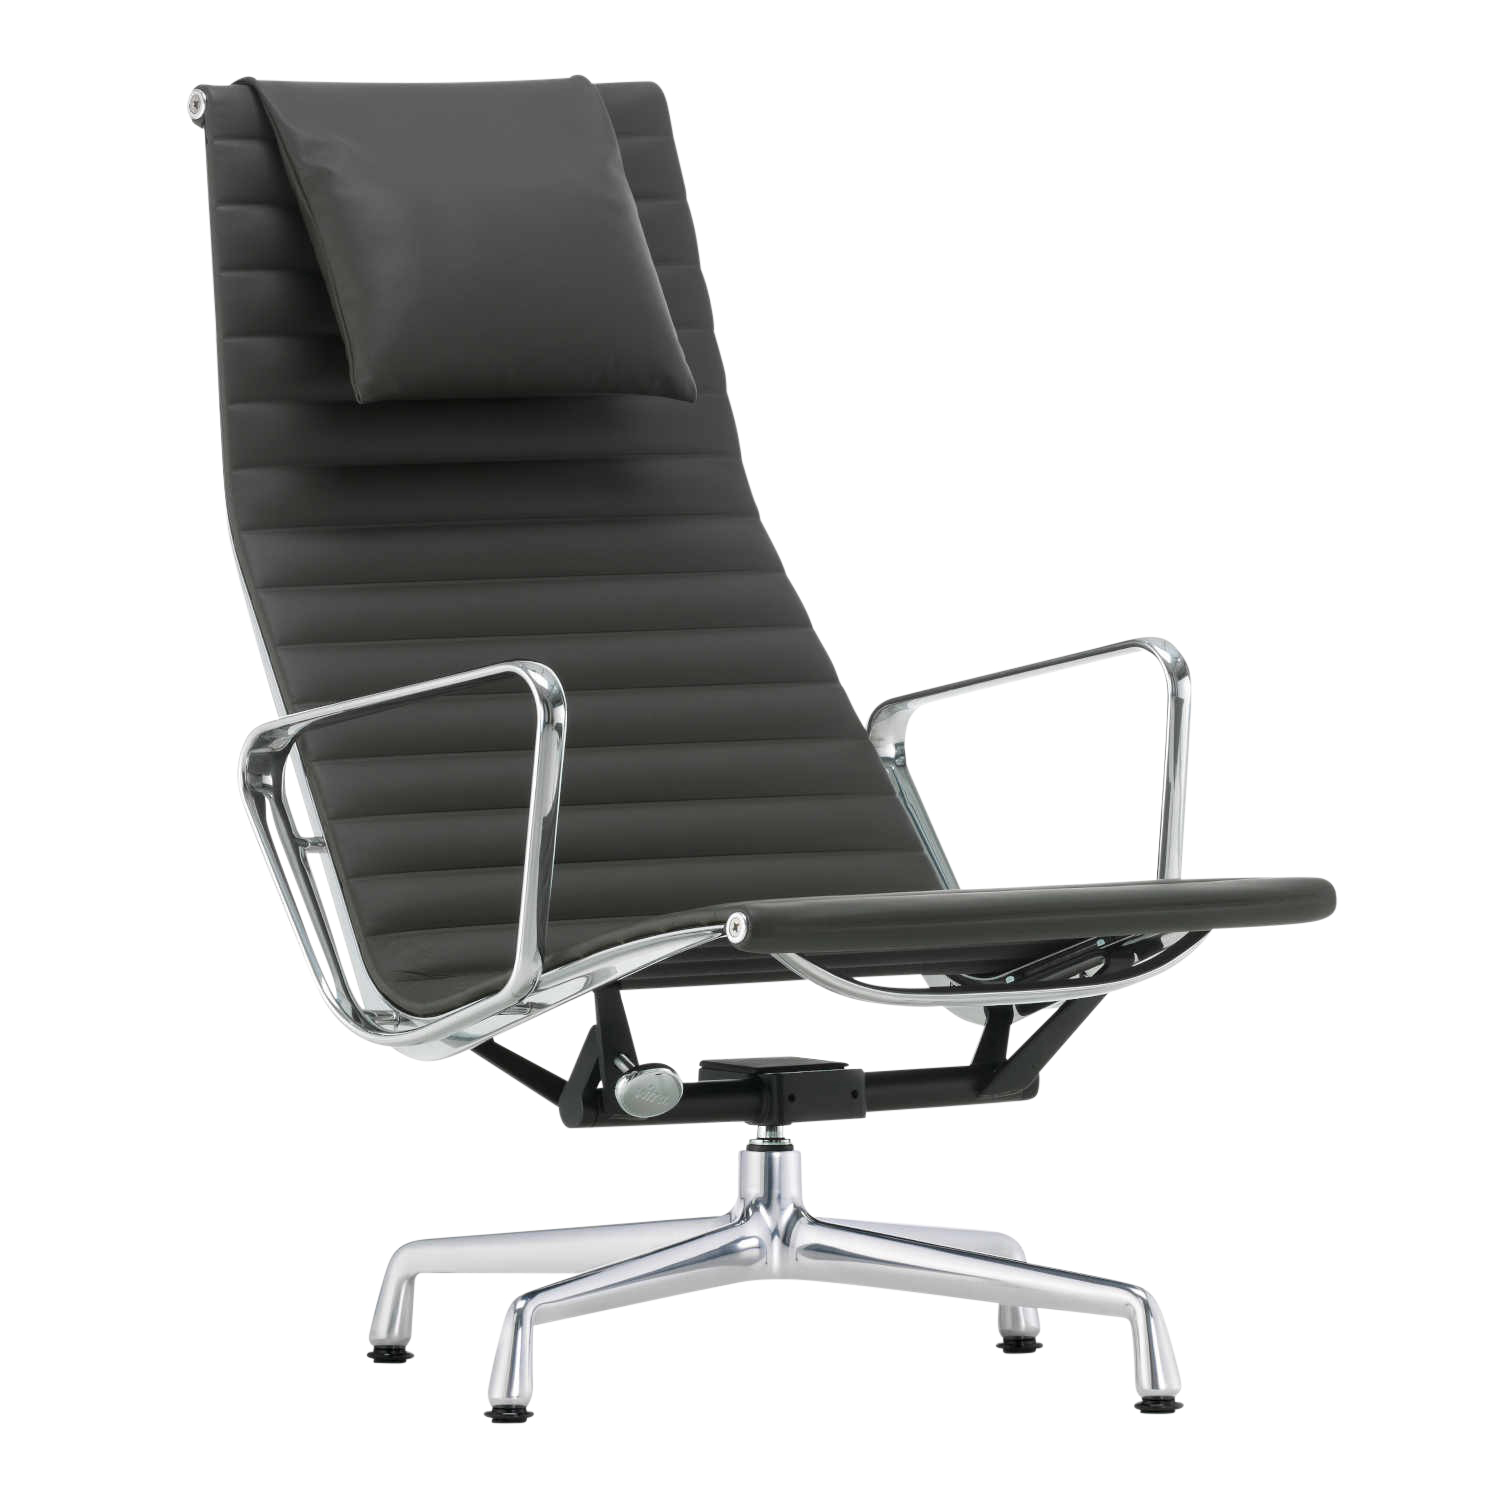 EA124 Aluminium Chair Leder-Drehsessel, Leder/Rückseite Plano 70/72 rot / poppy red, Untergestell poliert 1, Gleiter filzgleiter für harte böden von Vitra